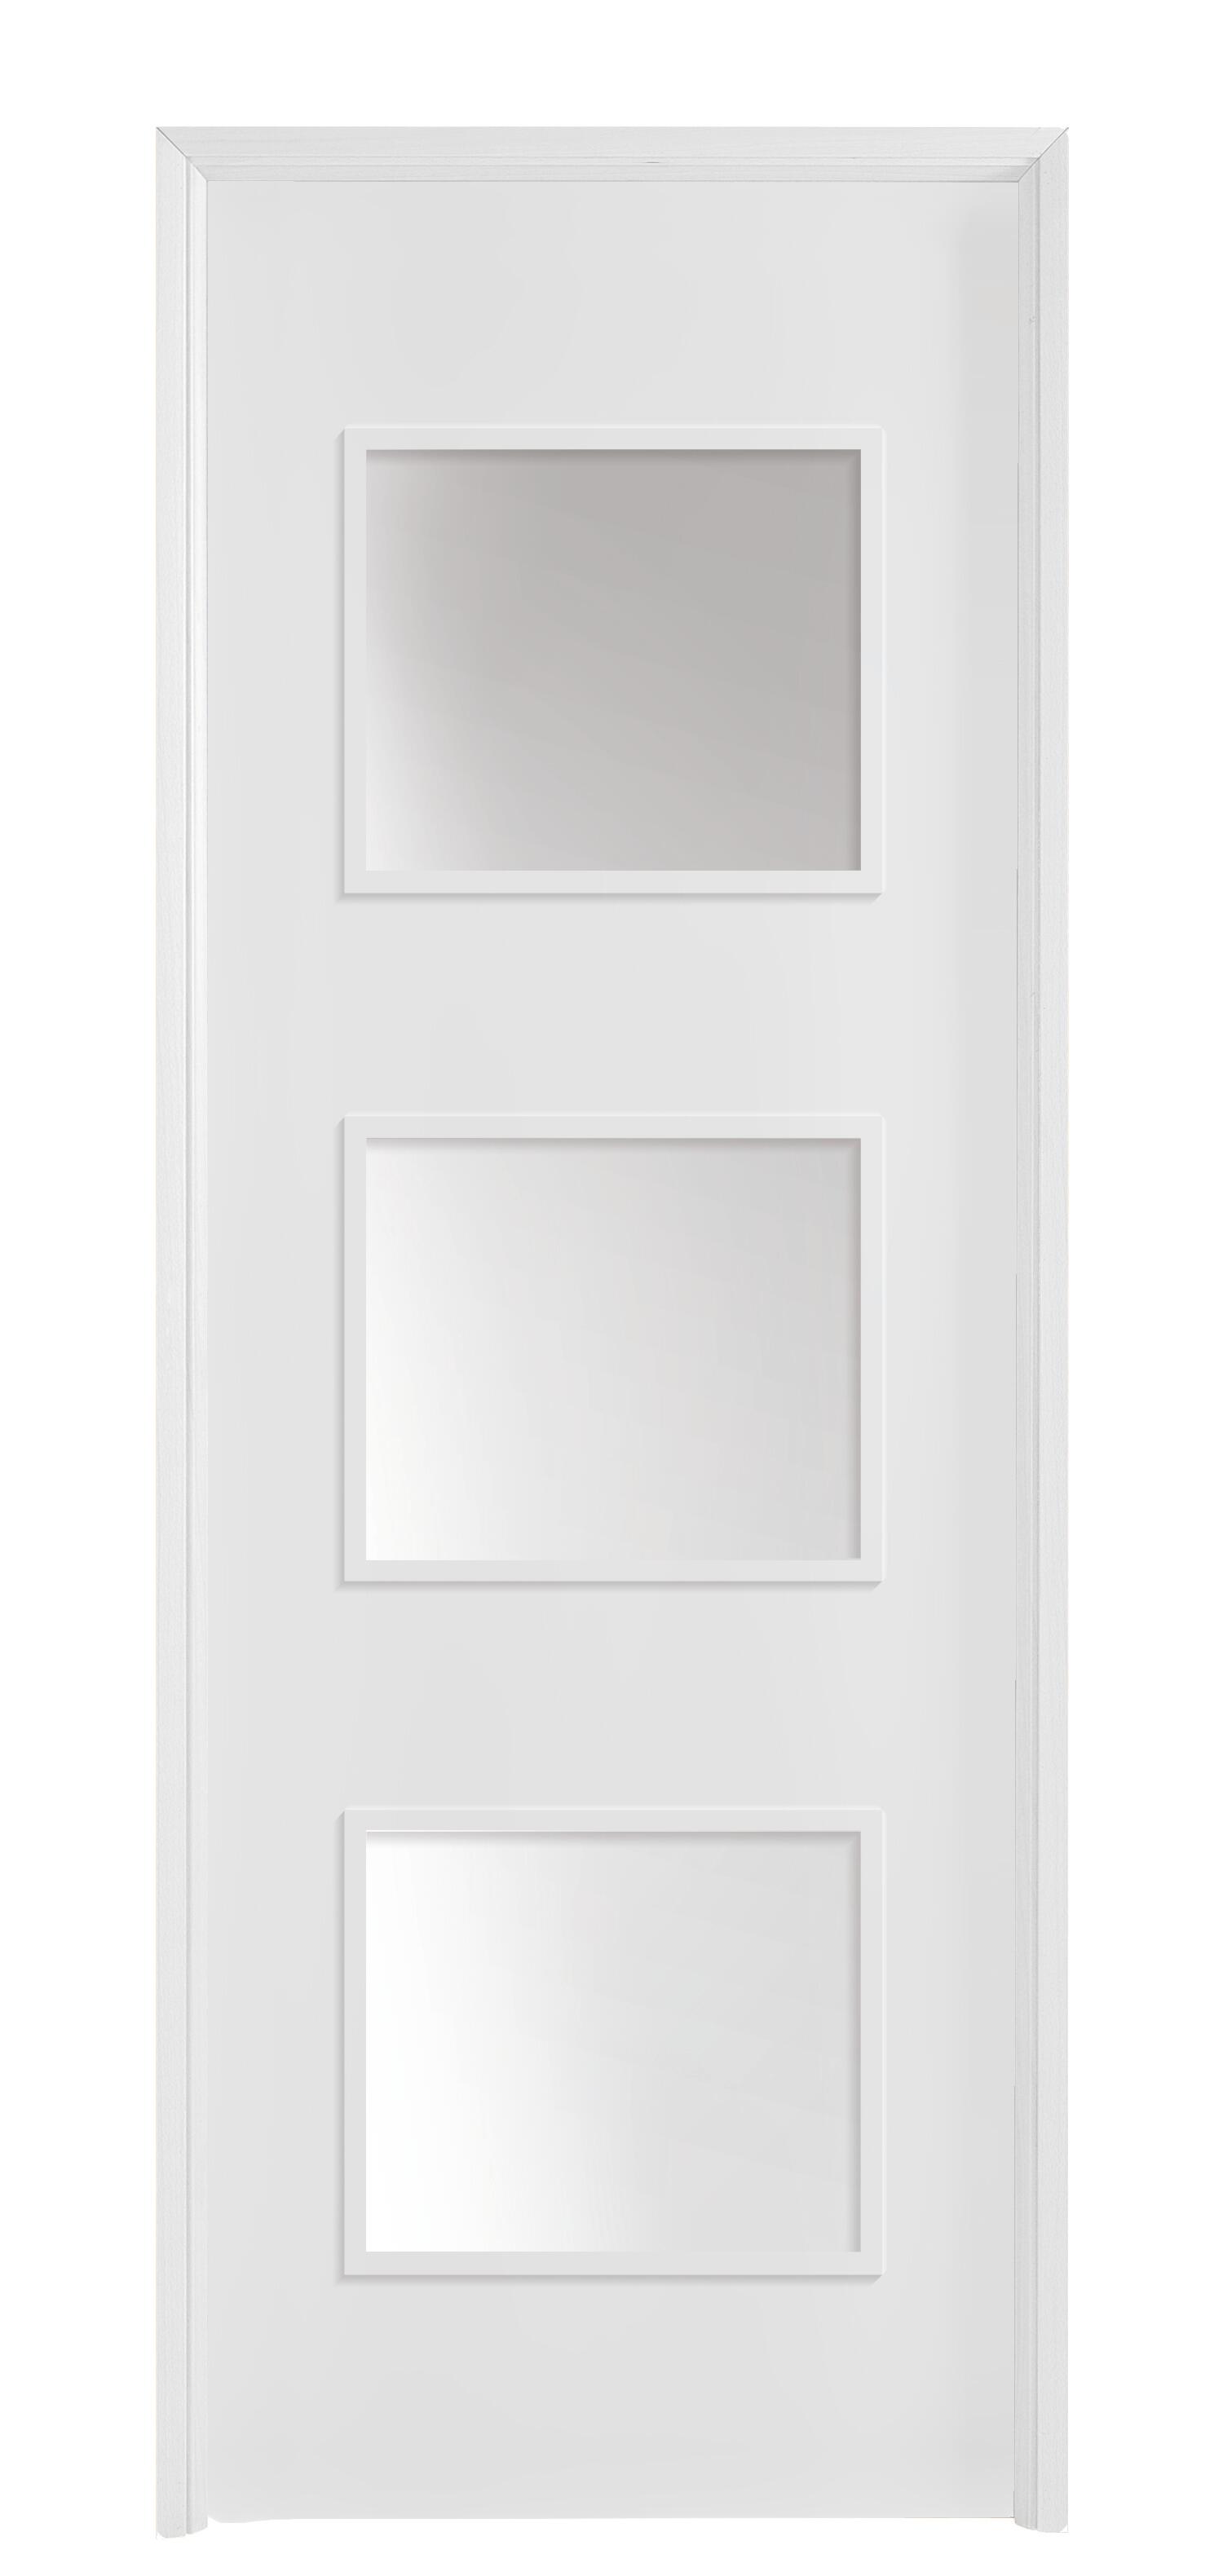 Puerta acristalada bari plus blanca 82,5 cm d